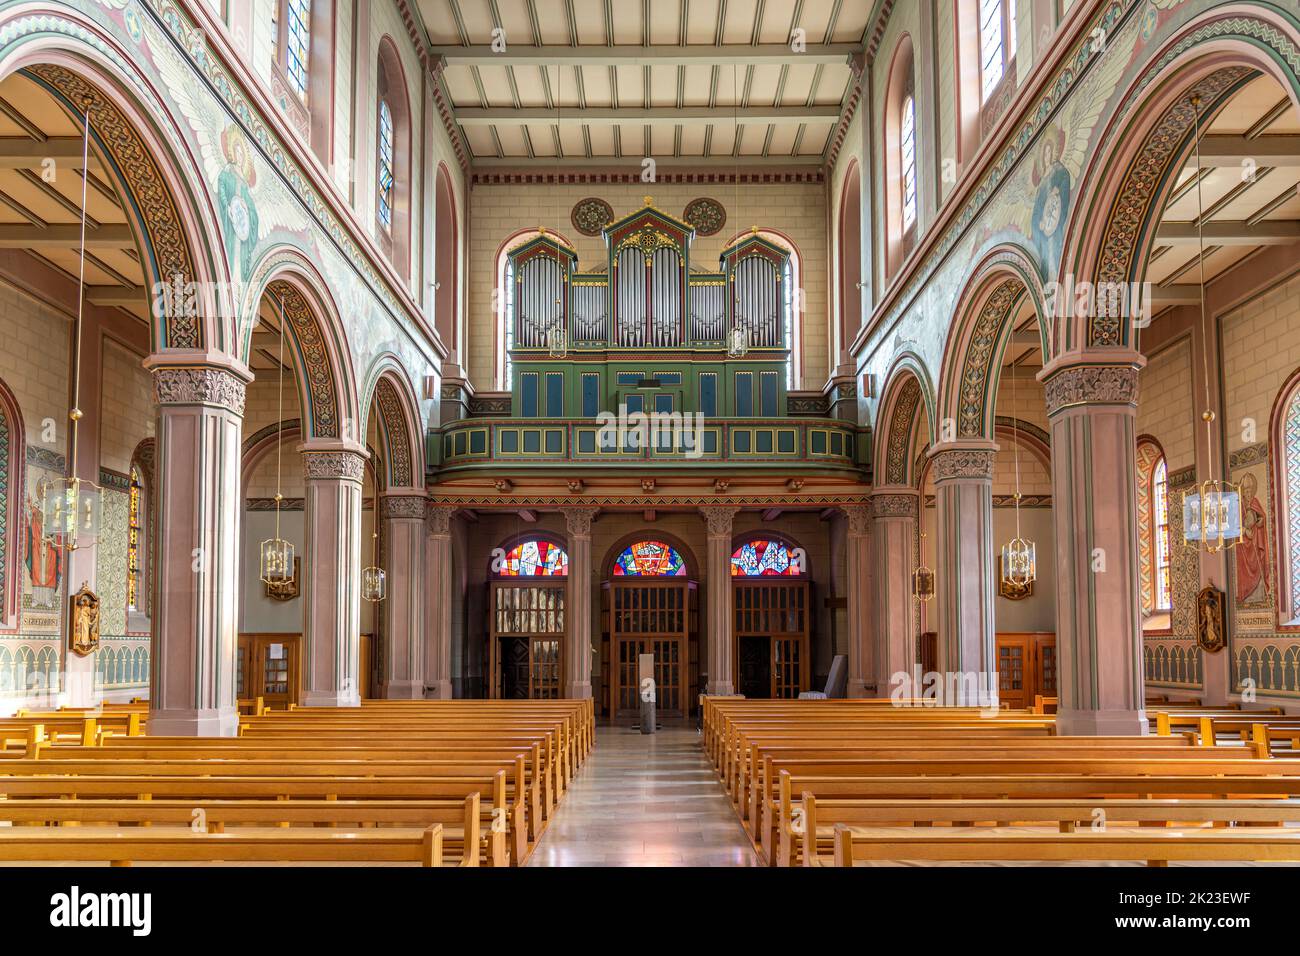 Innenraum und Orgel der Kirche St. Peter und Paul in Lahr/Schwarzwald, Bade-Wurtemberg, Allemagne | intérieur de l'église Saint-Pierre et Paul avec orgue Banque D'Images